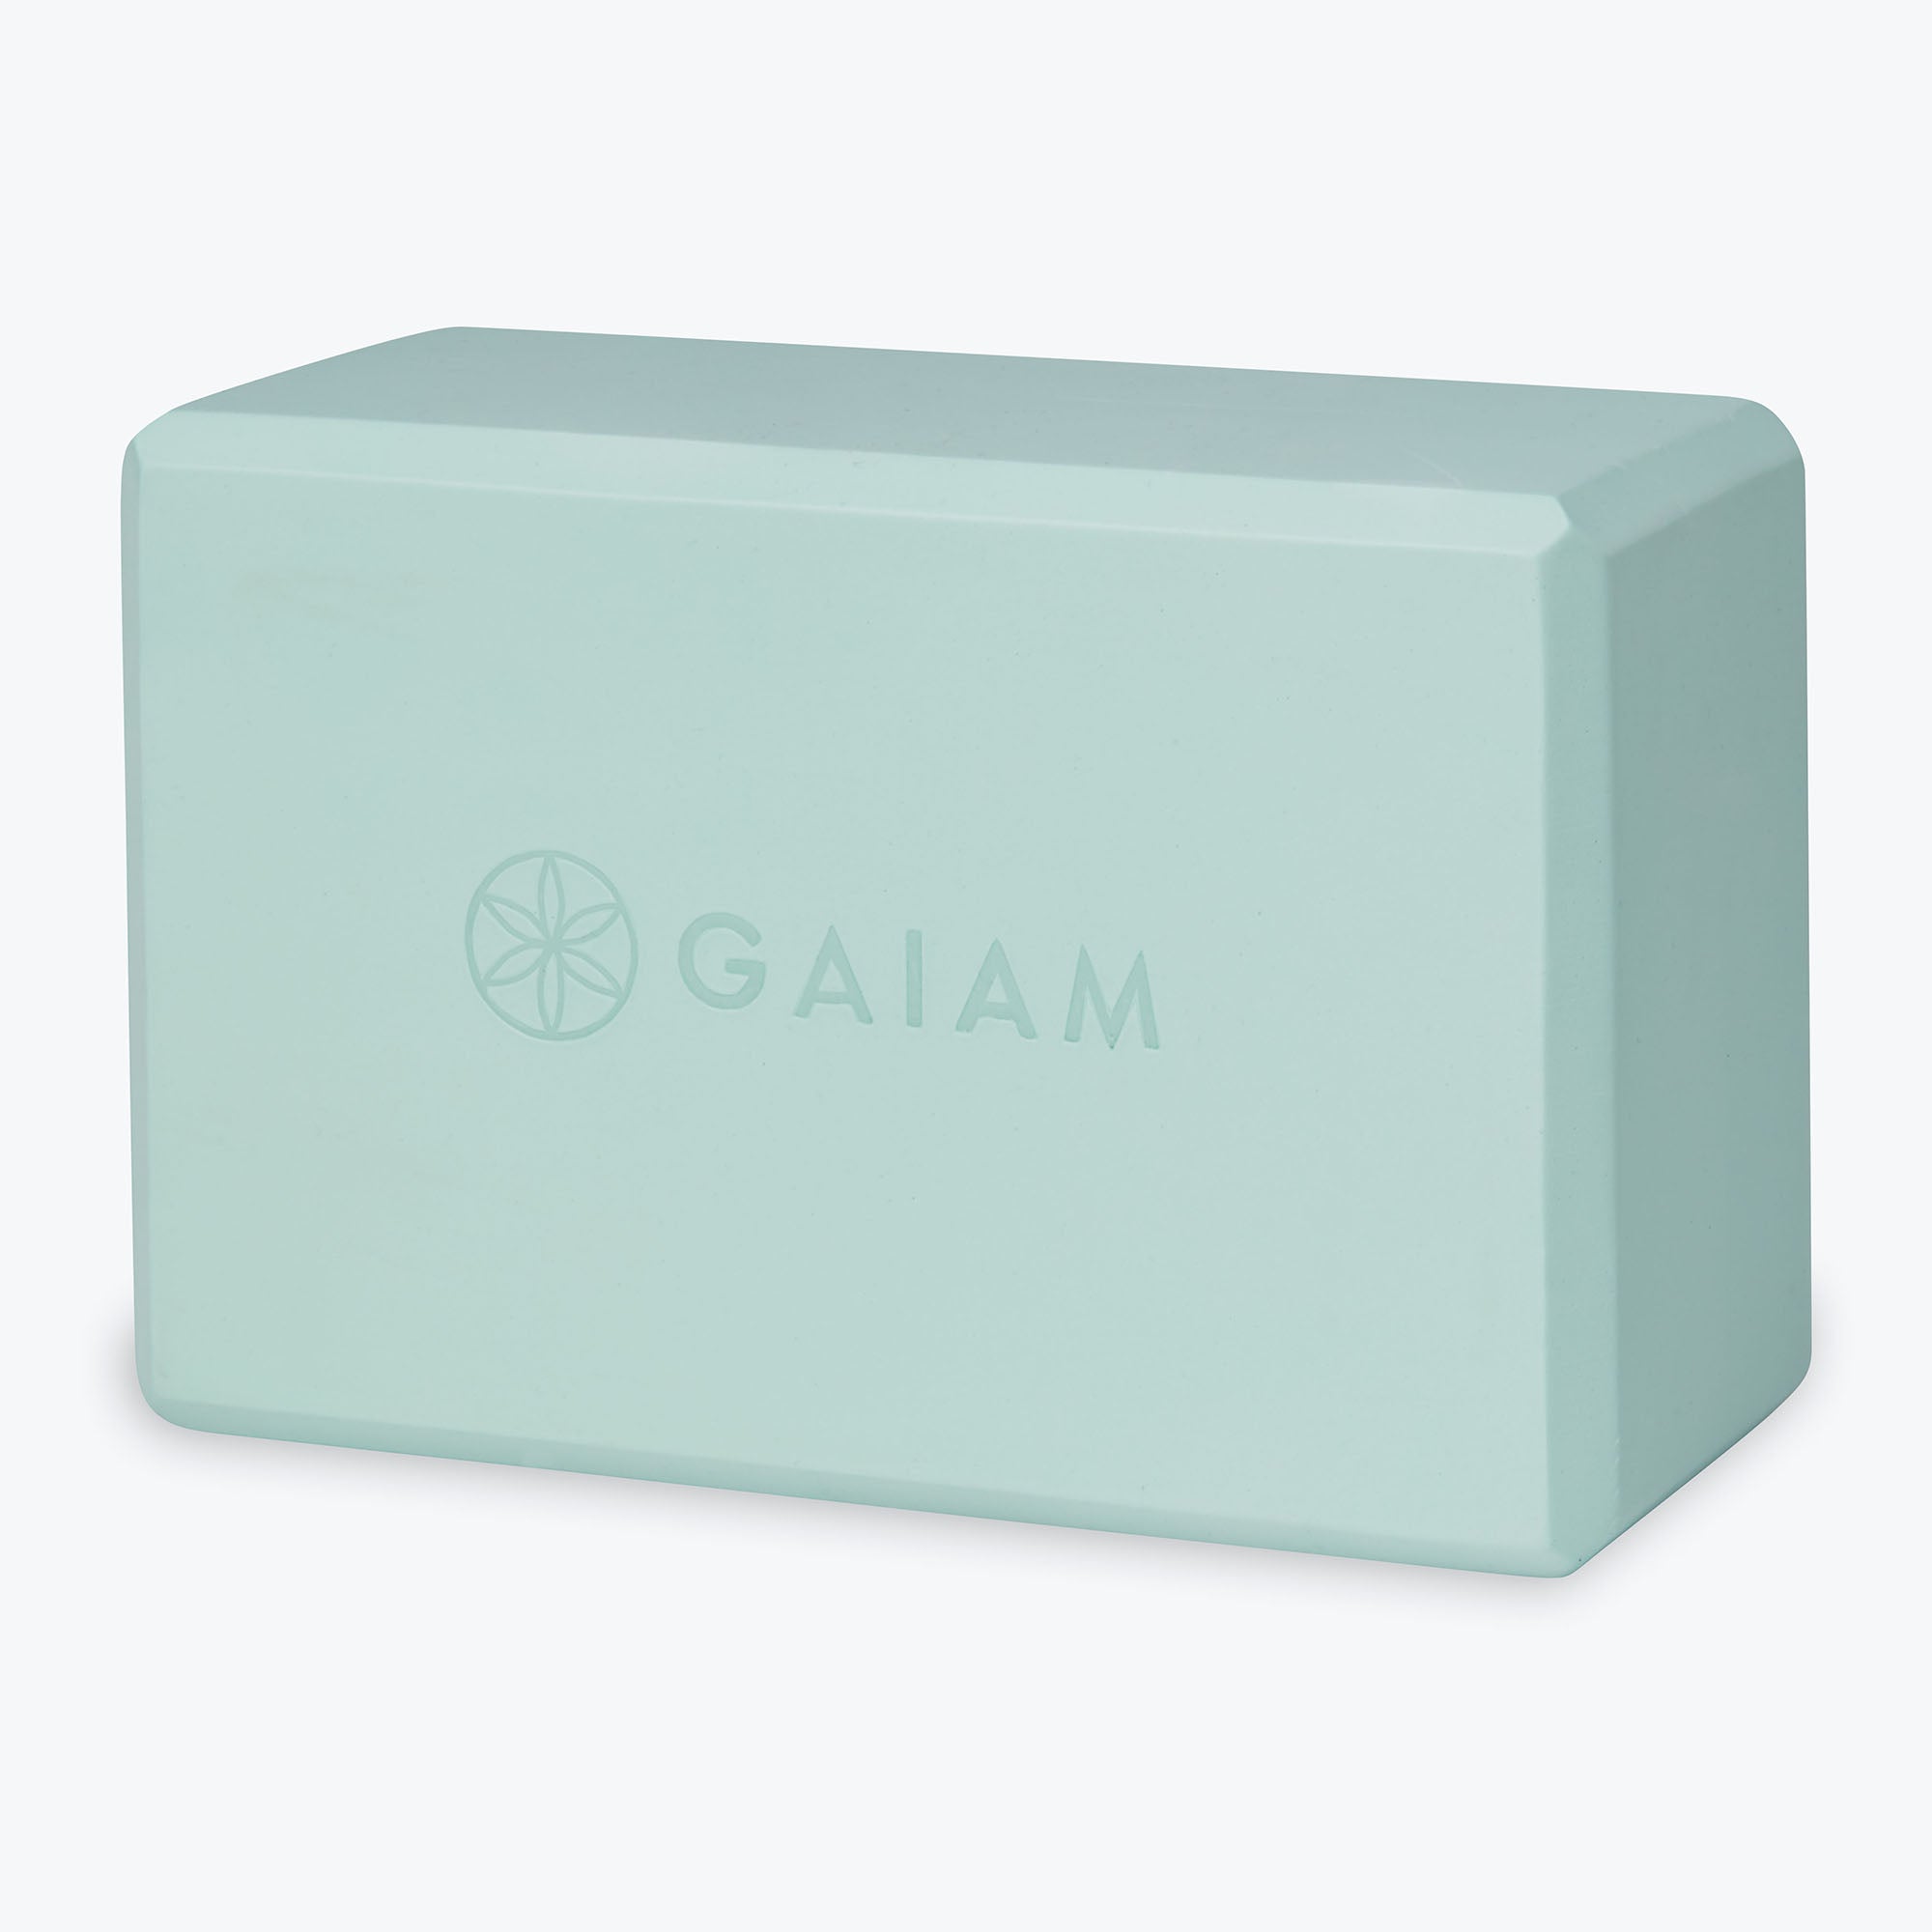 Yoga Essentials Block - Gaiam